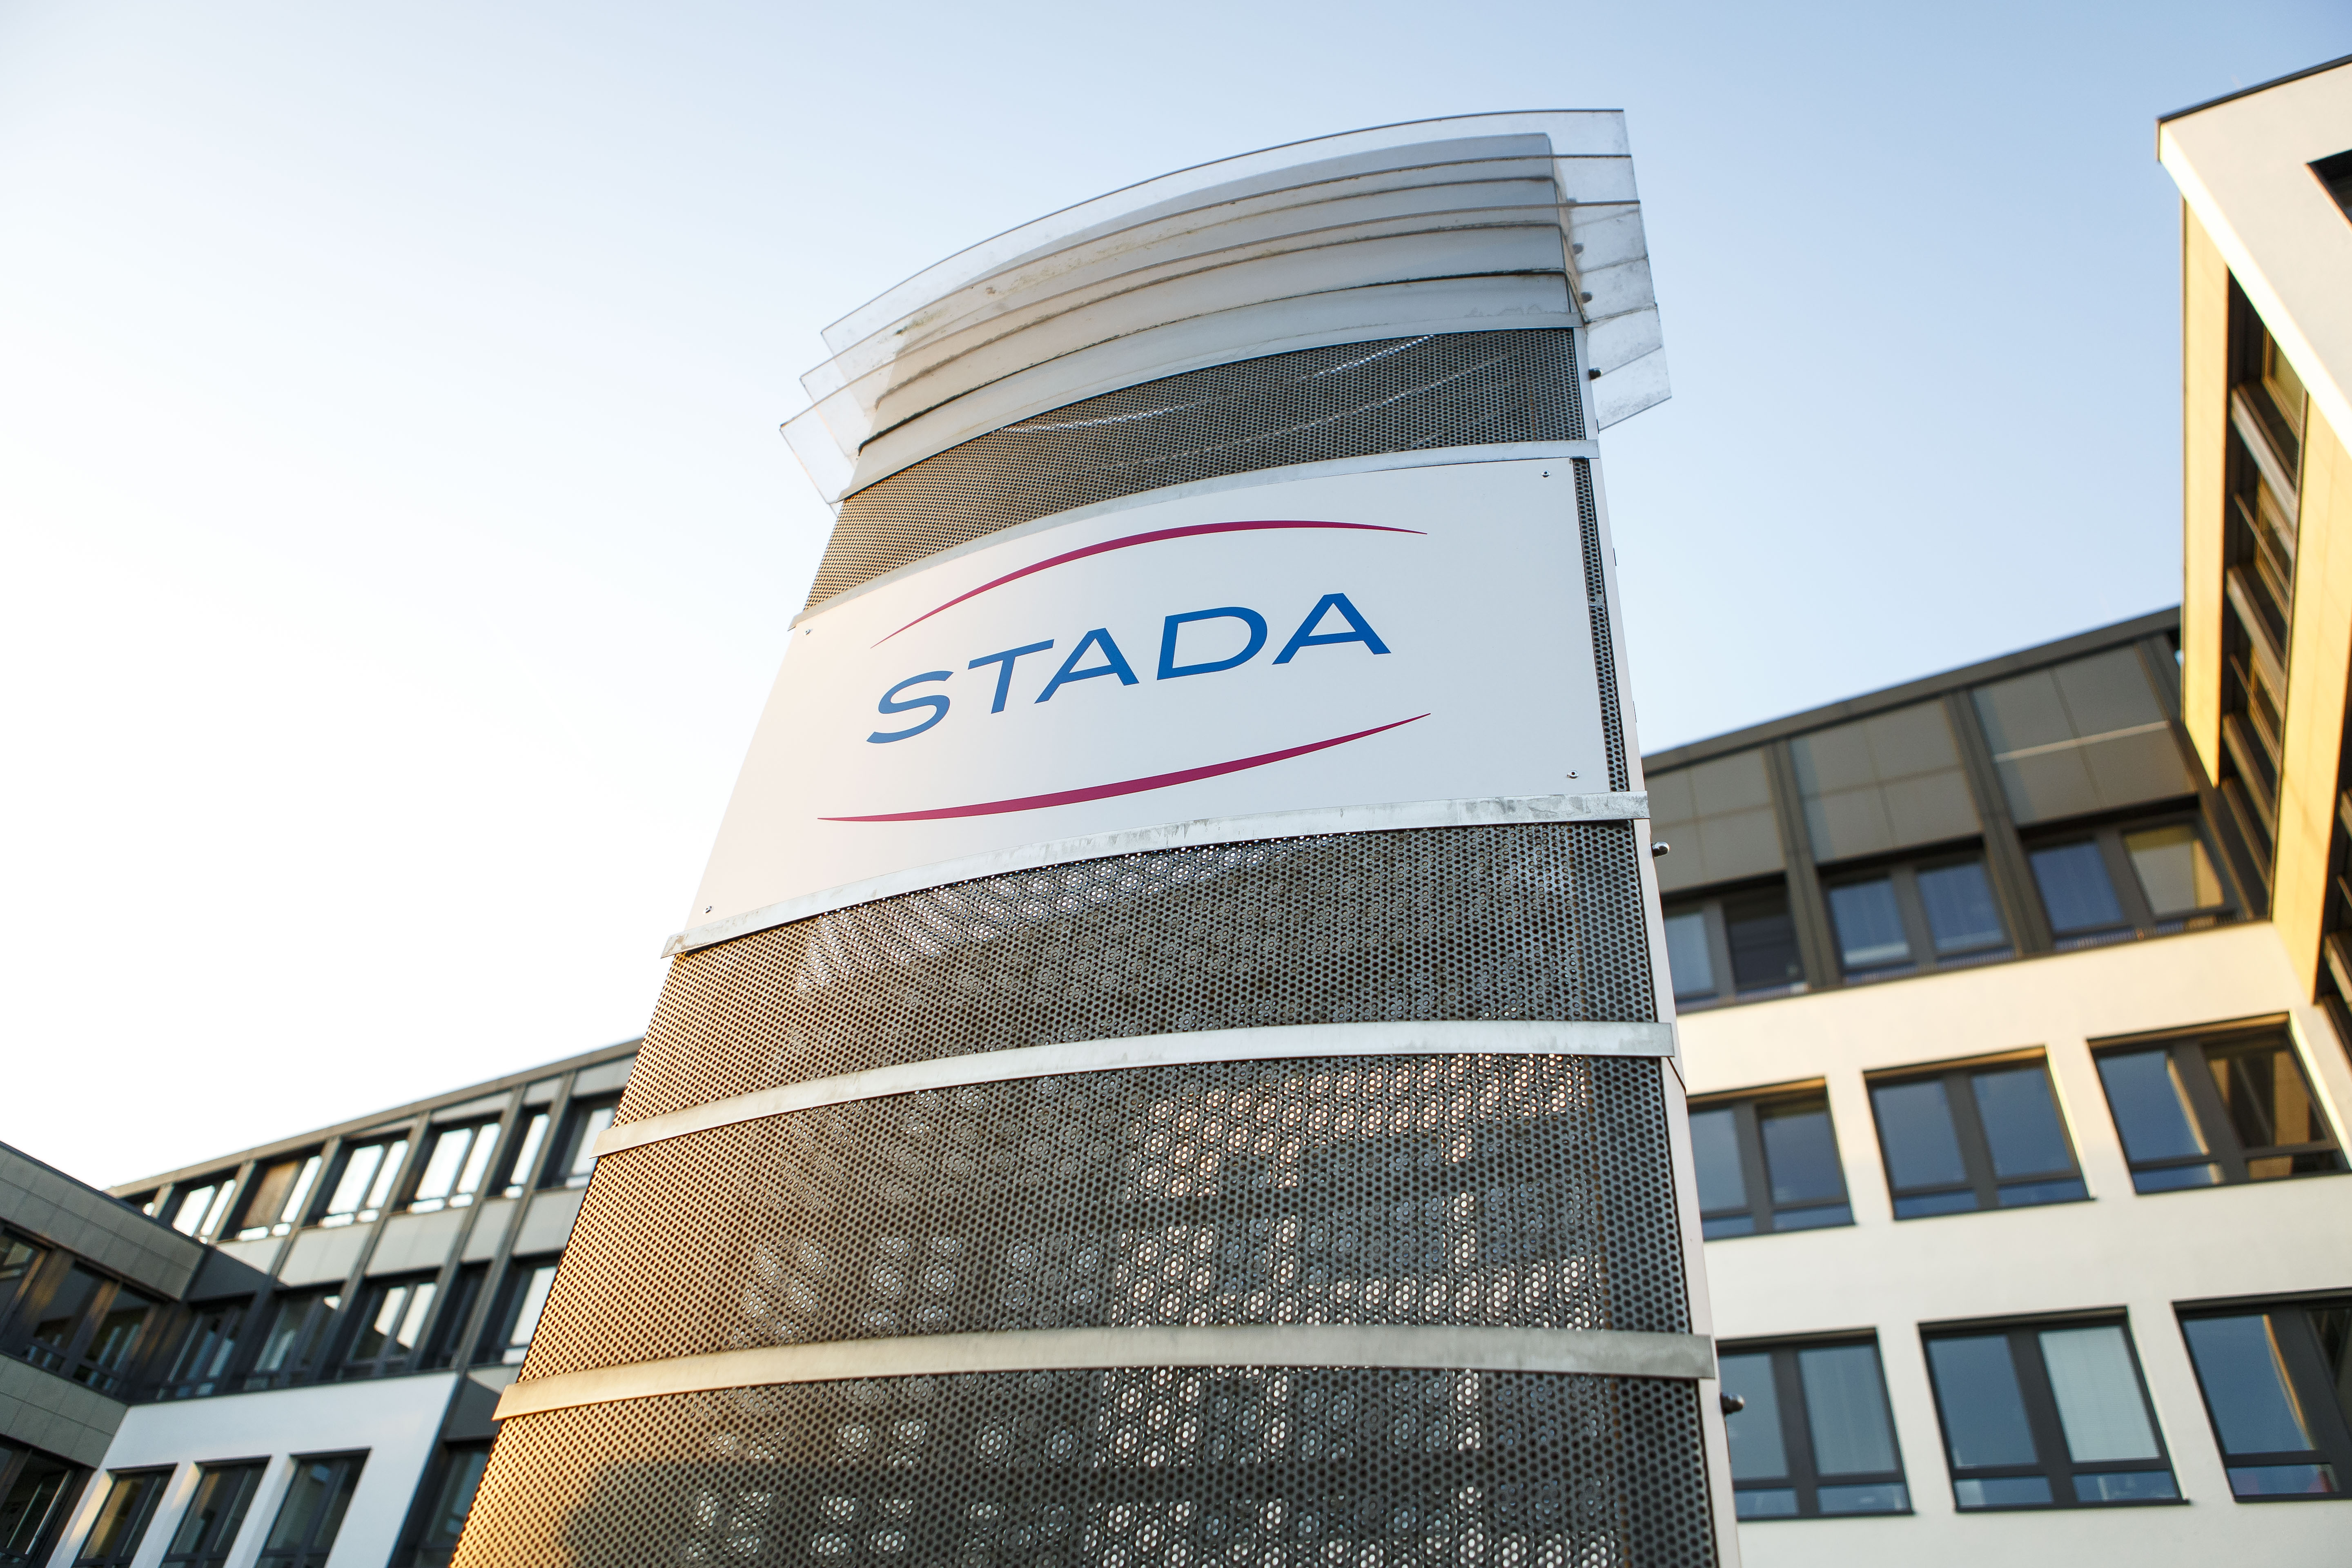 Világszerte erős pozícióval rendelkező márkával bővül a STADA portfóliója